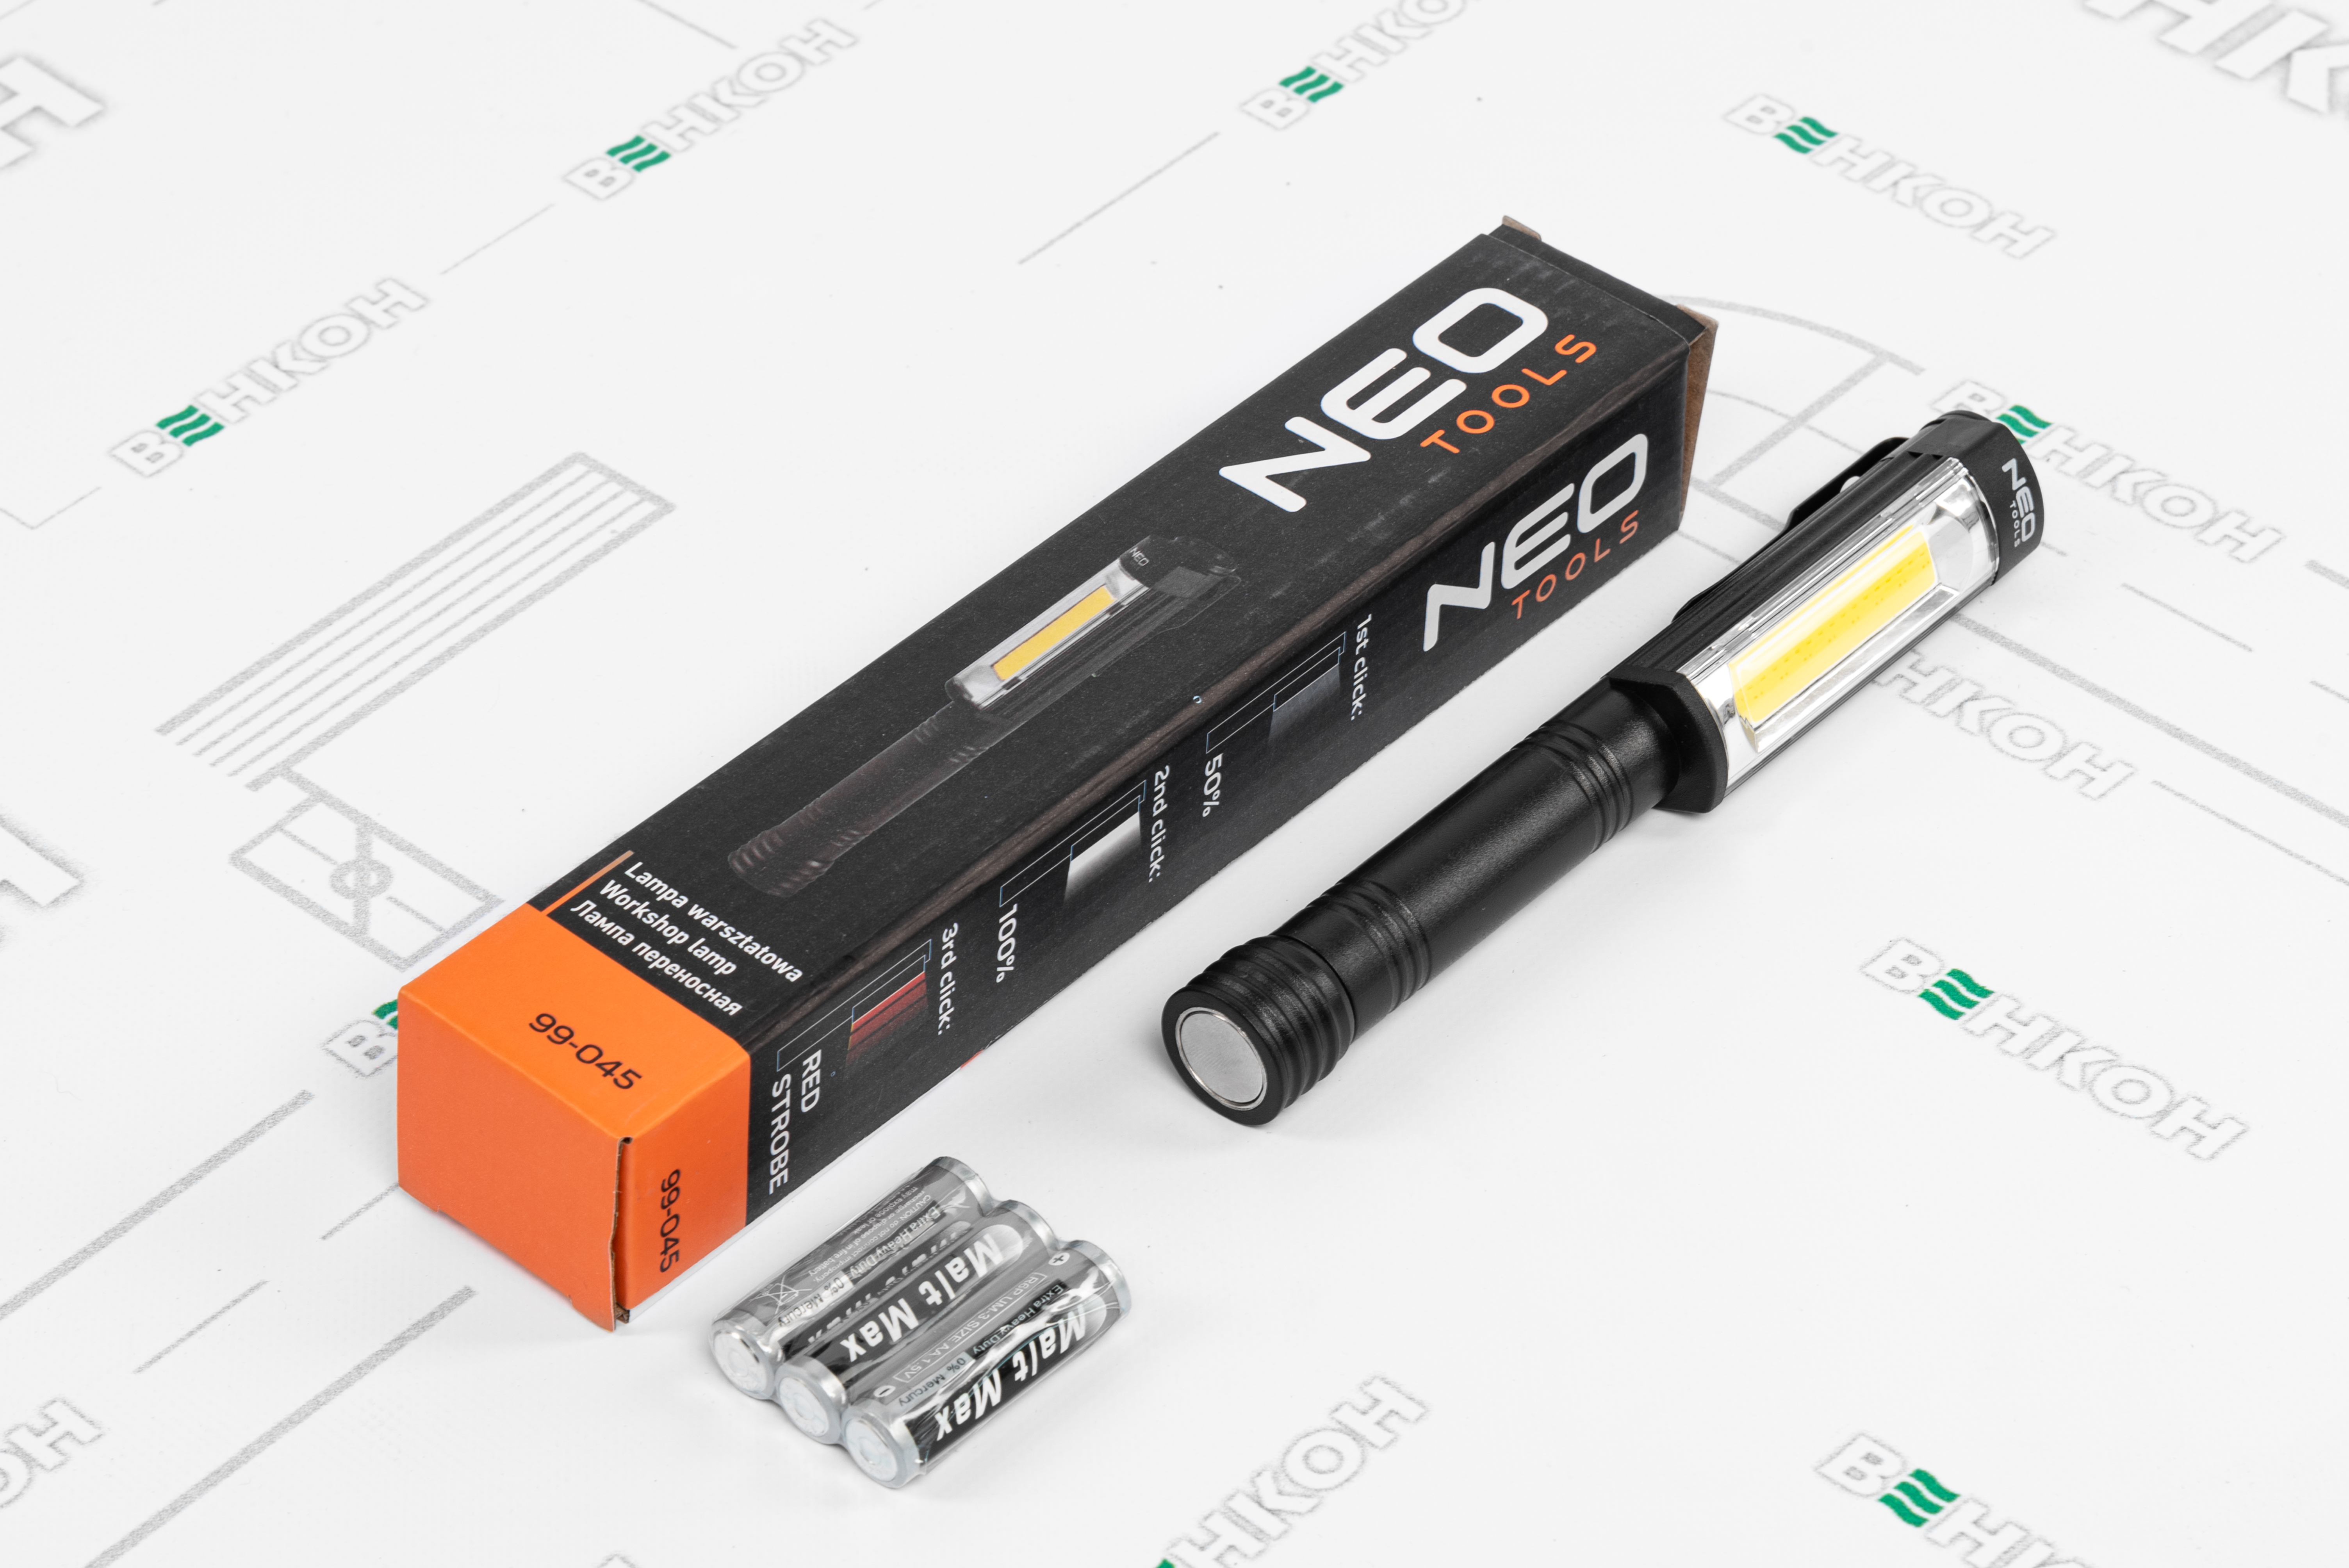 Інспекційний ліхтарик Neo Tools 99-045 зовнішній вигляд - фото 9